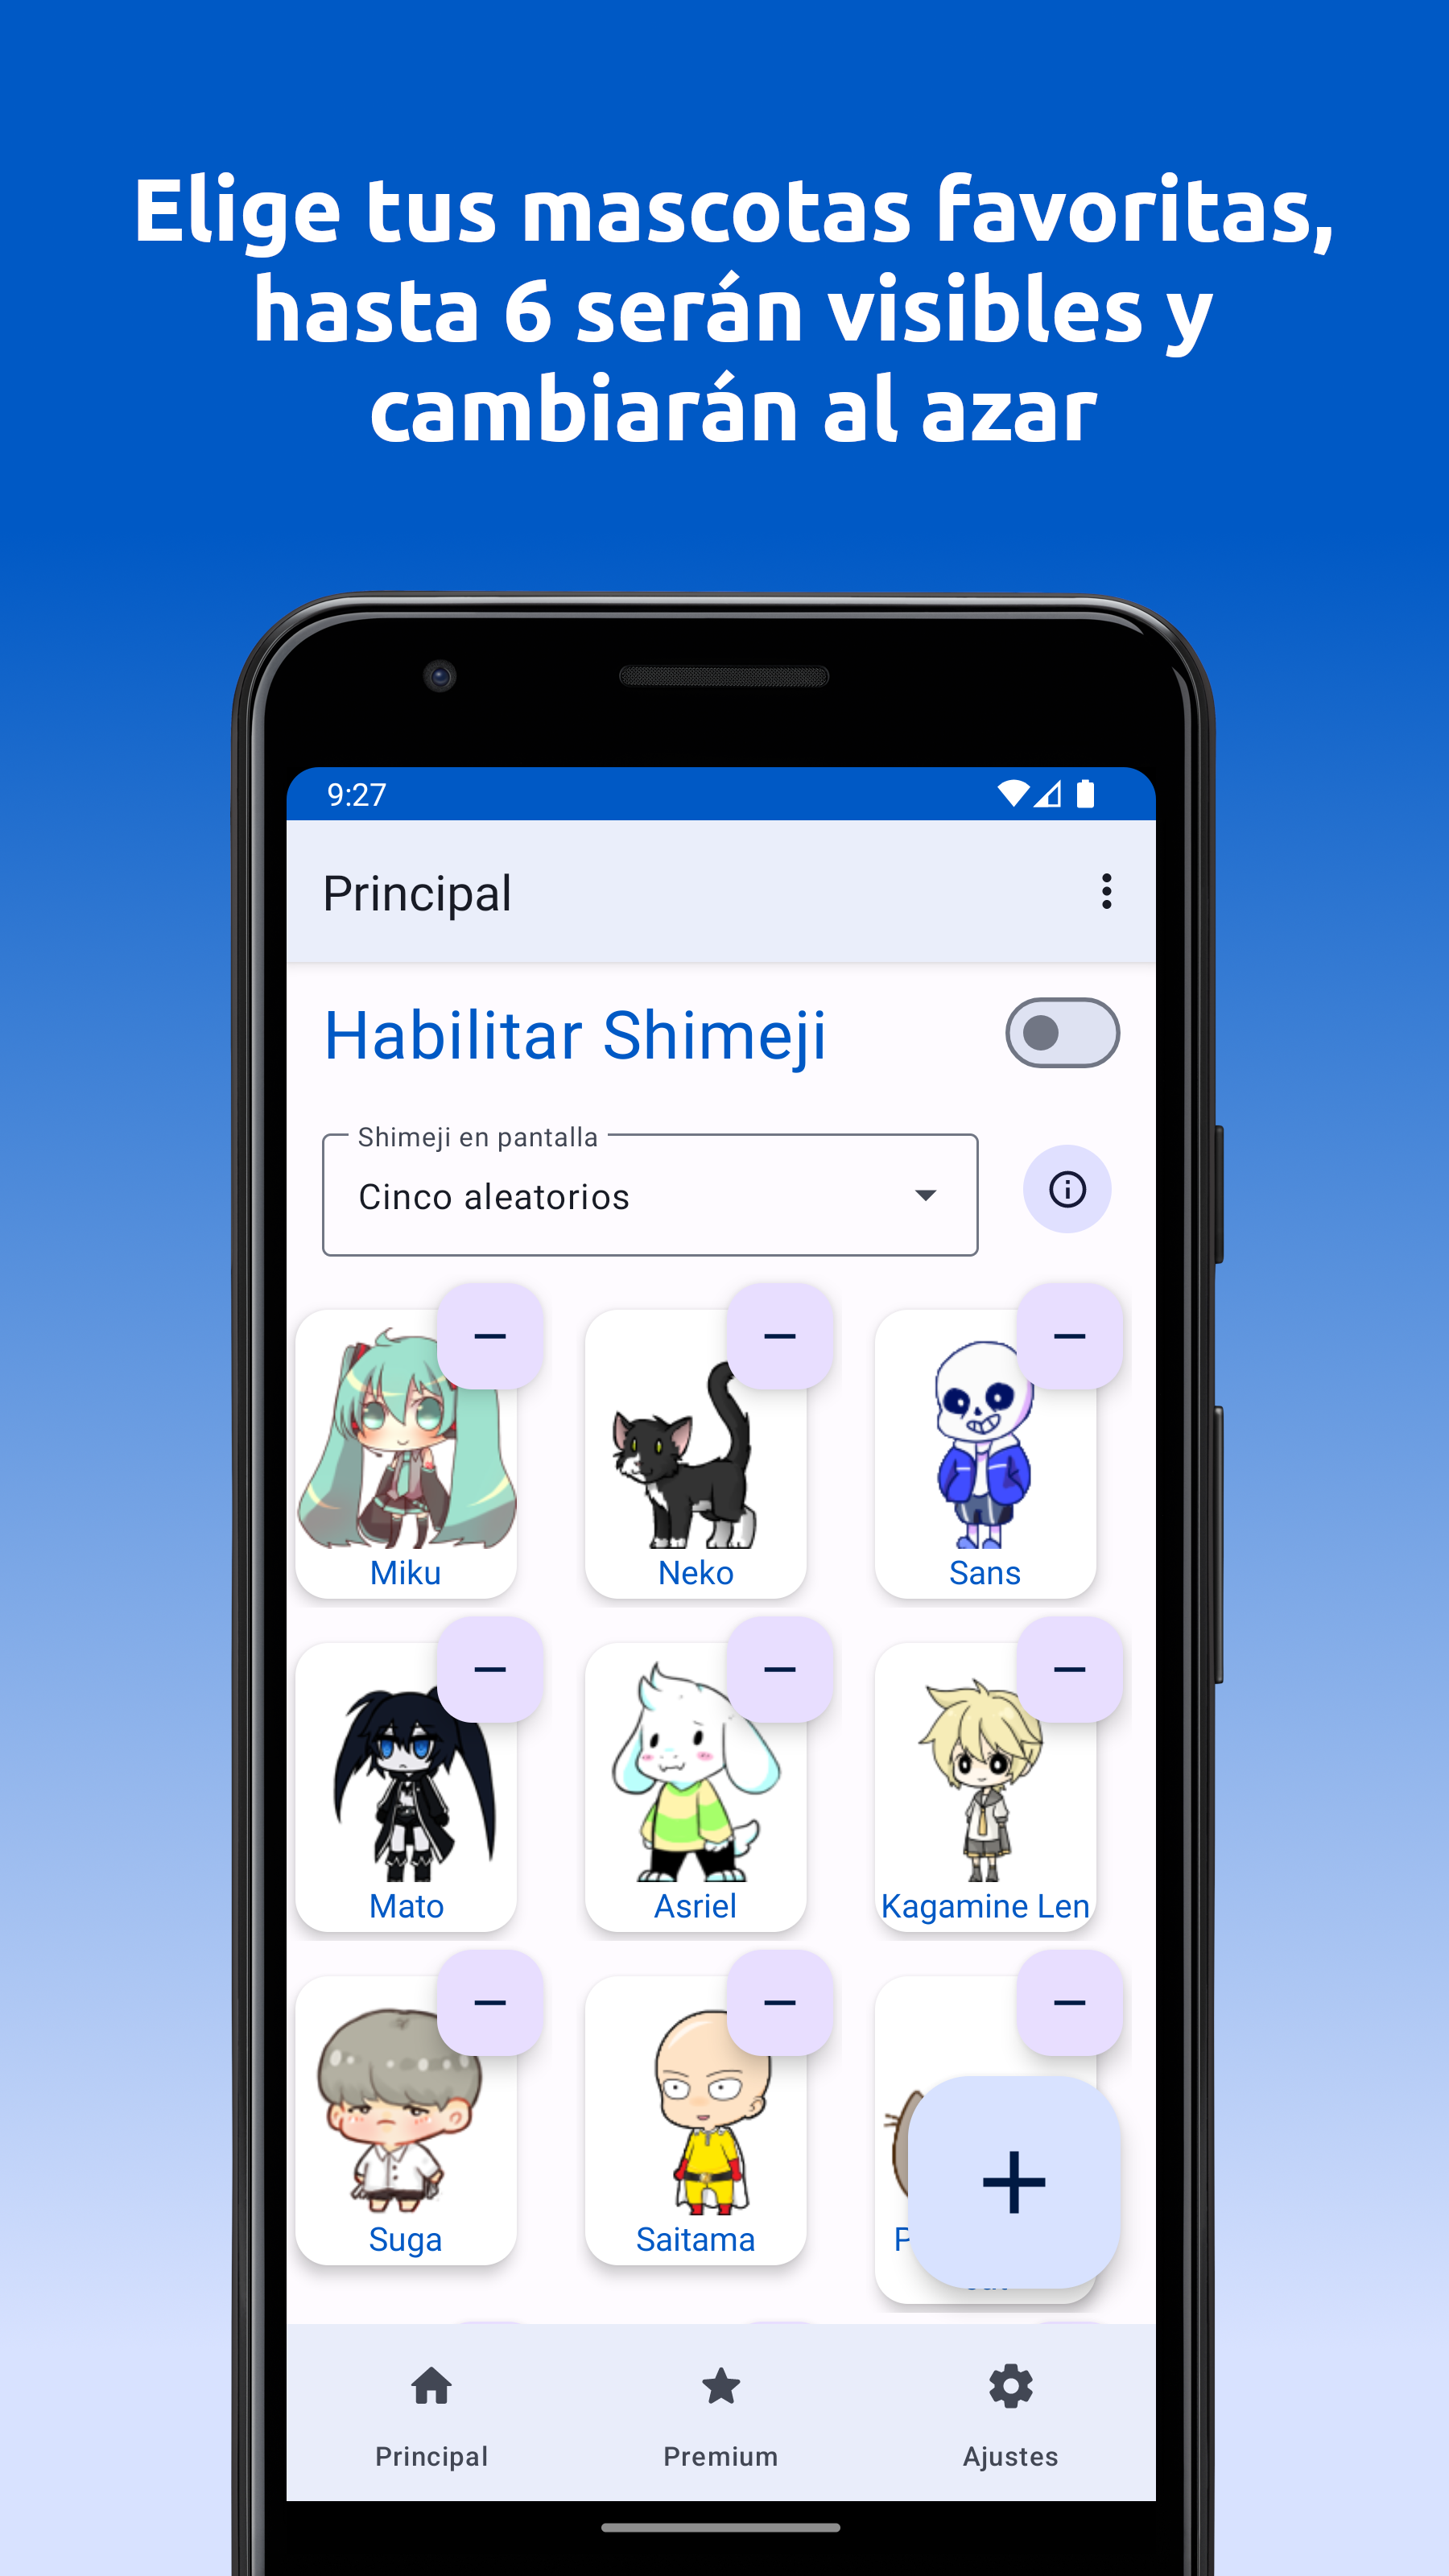 Mascotas virtuales - Adorables personajes de anime y videojuegos para personalizar tu teléfono